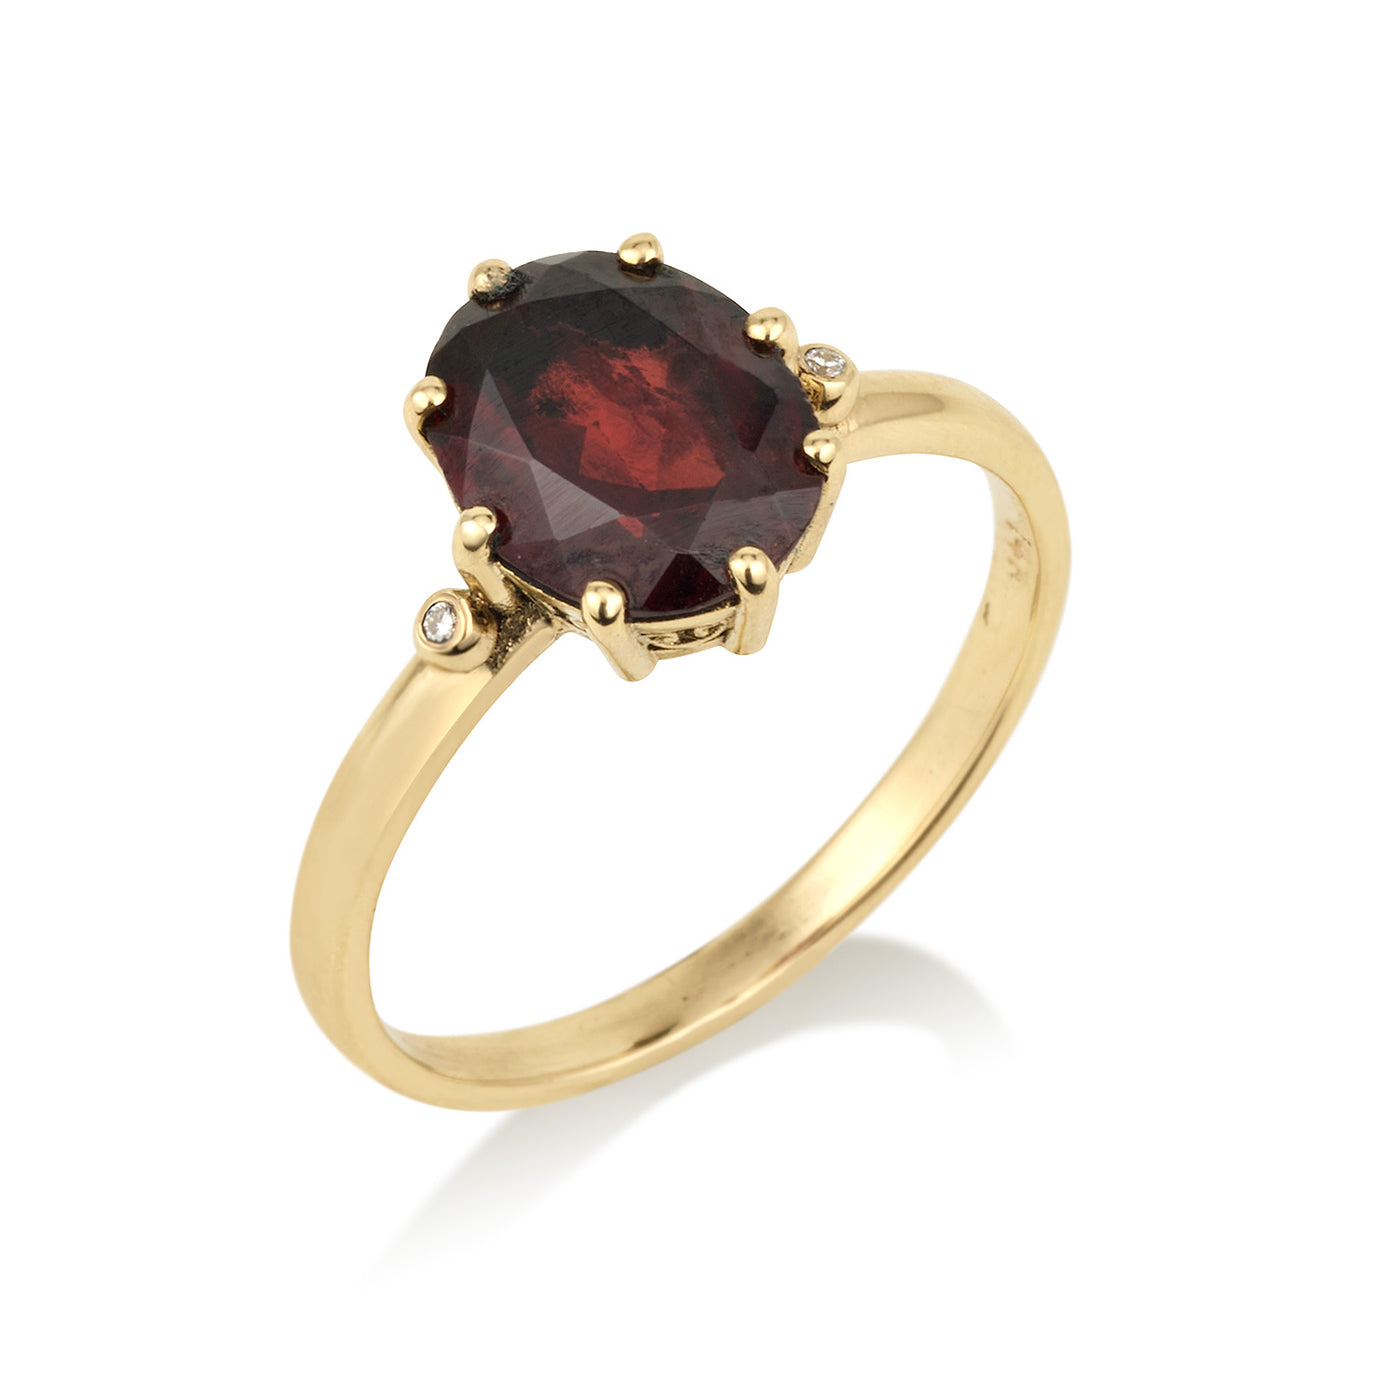 טבעת זהב וינטג' משובצת אבן גרנט עם יהלומים בצדדים